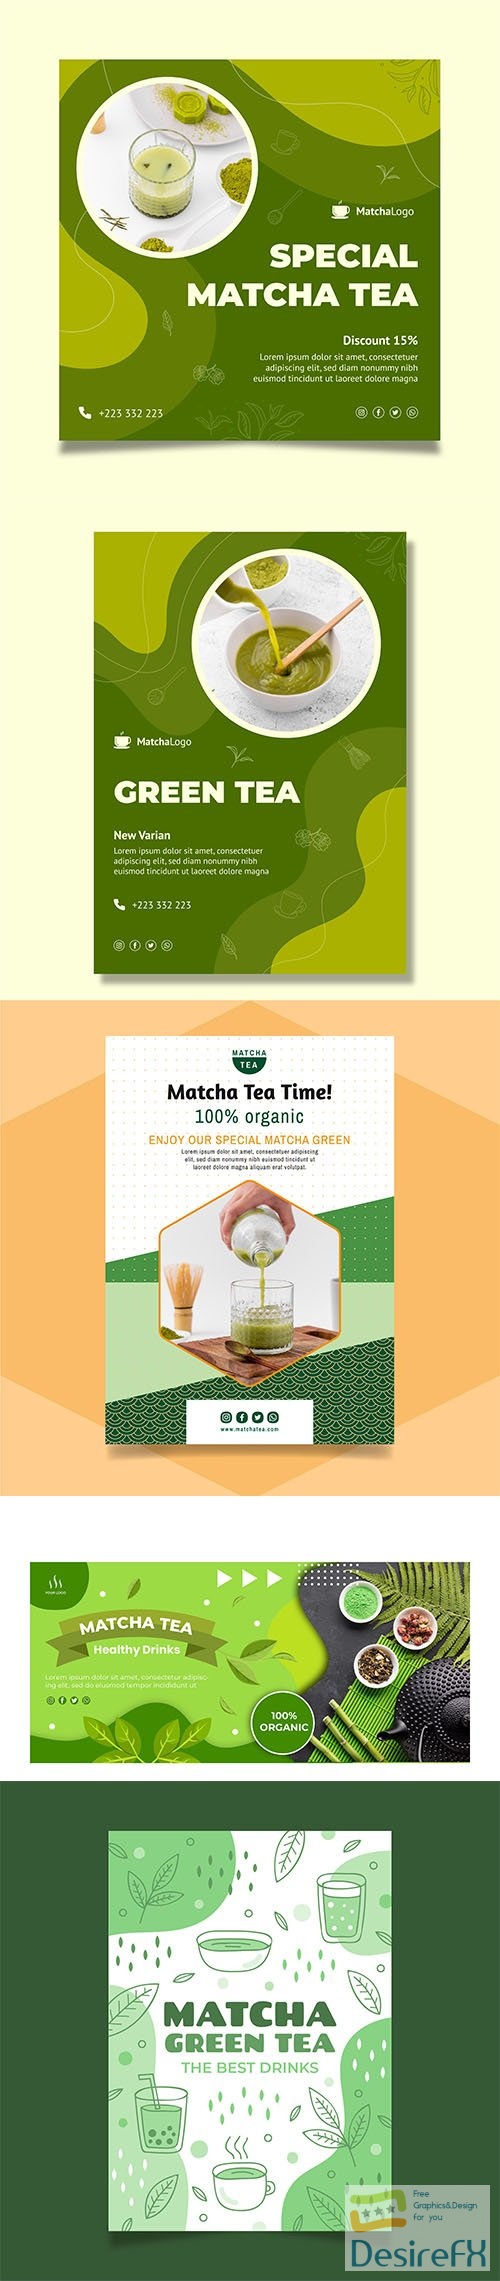 Matcha tea template set